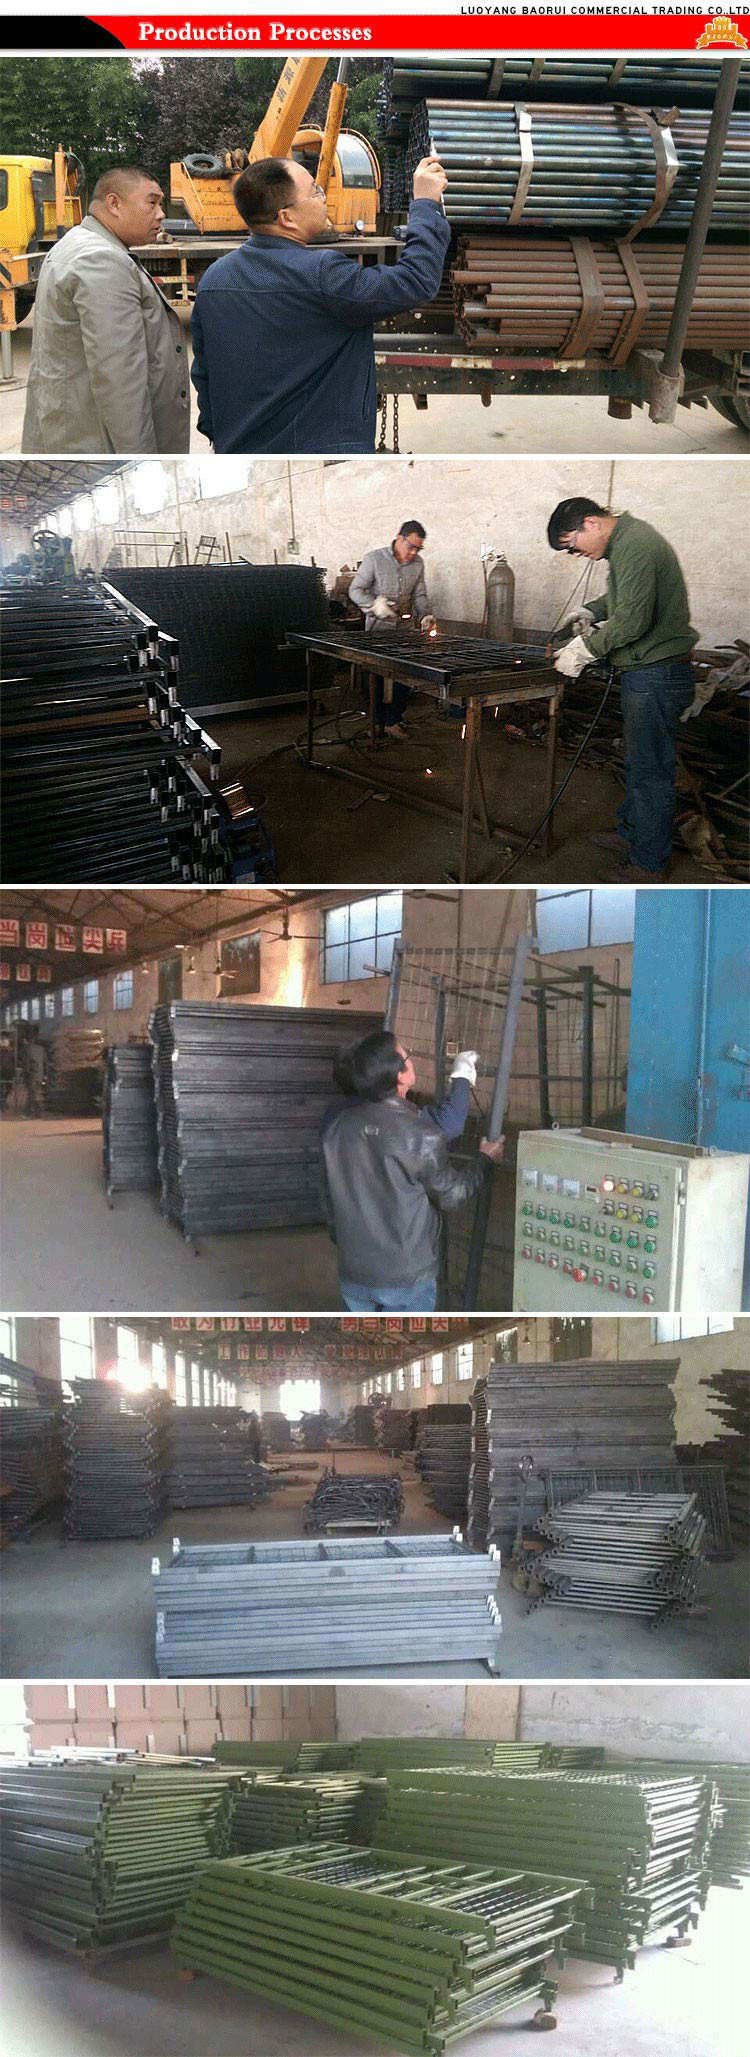 Jas-086 Factory Sale Modern Shool Furniture Steel Metal Bunk Dormitory Bed